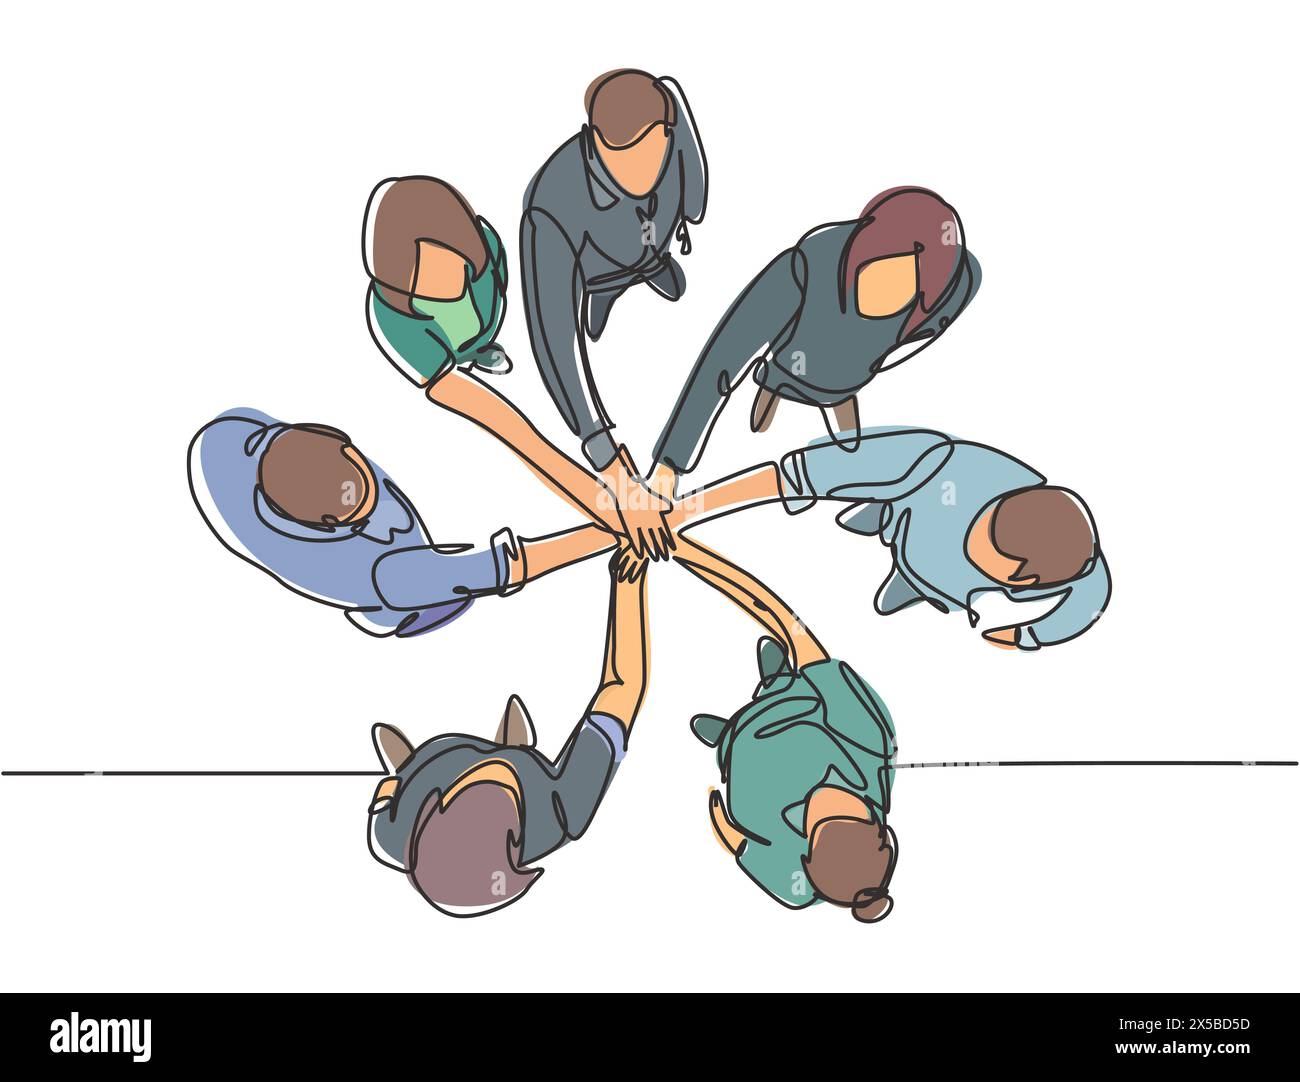 Un groupe de dessin de ligne simple de jeunes gens d'affaires heureux unissent leurs mains ensemble pour former un symbole de forme de cercle, vue de dessus. Travail d'équipe tendance Illustration de Vecteur